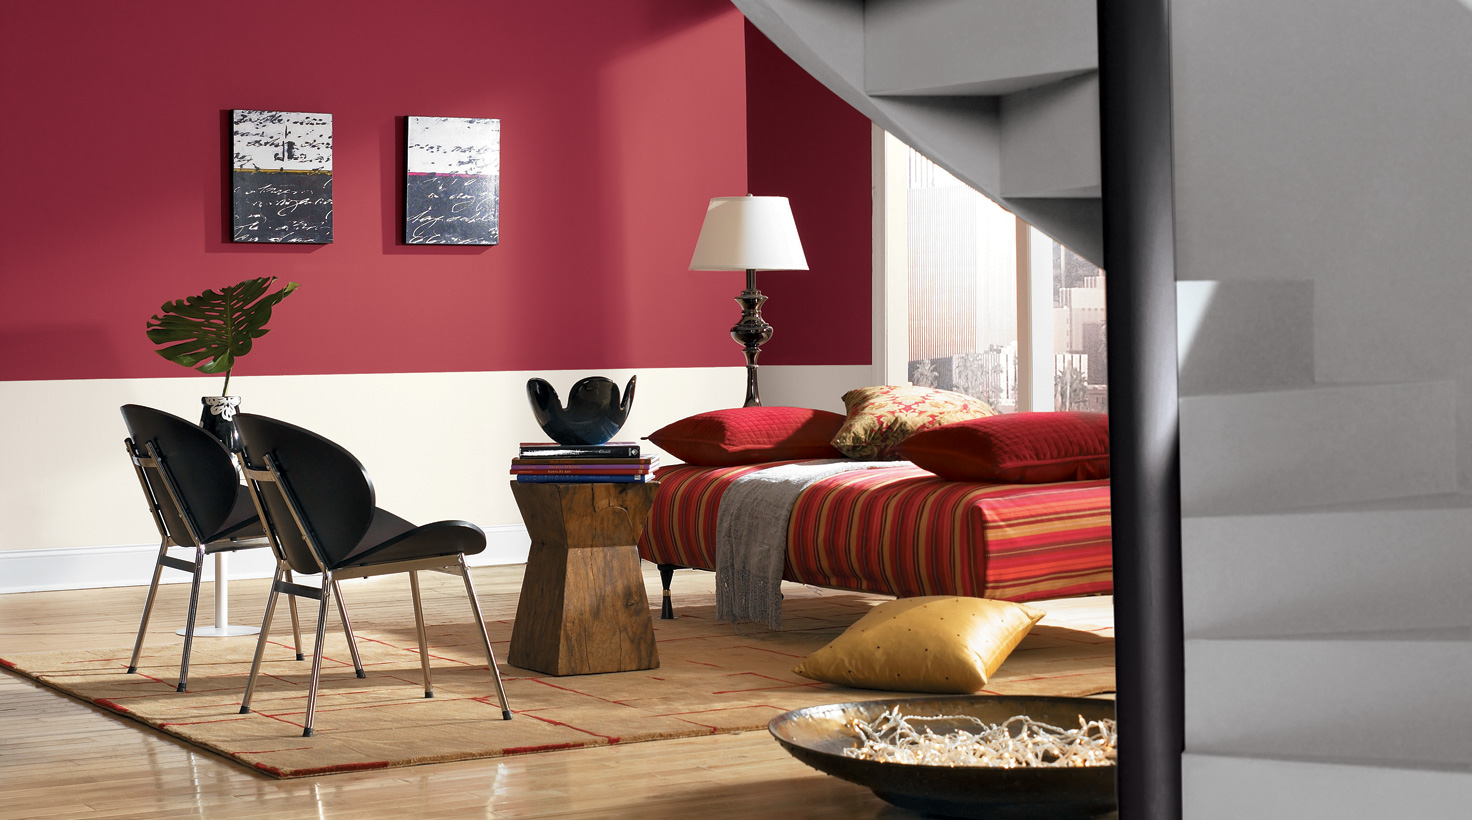 Living Room - Reds